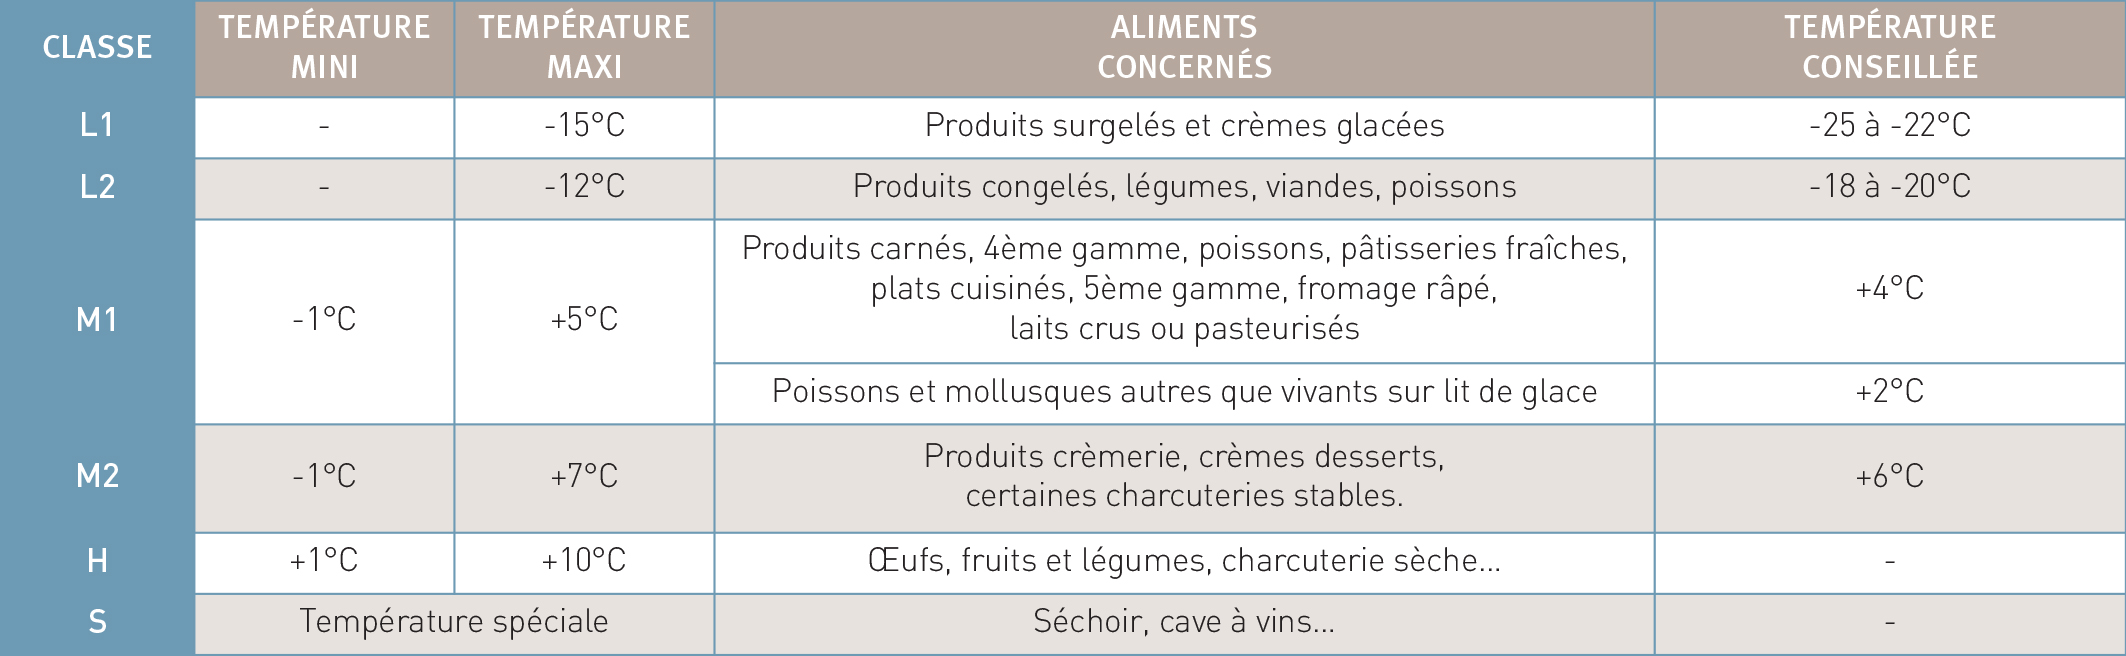 Classification des vitrines et conservation des aliments